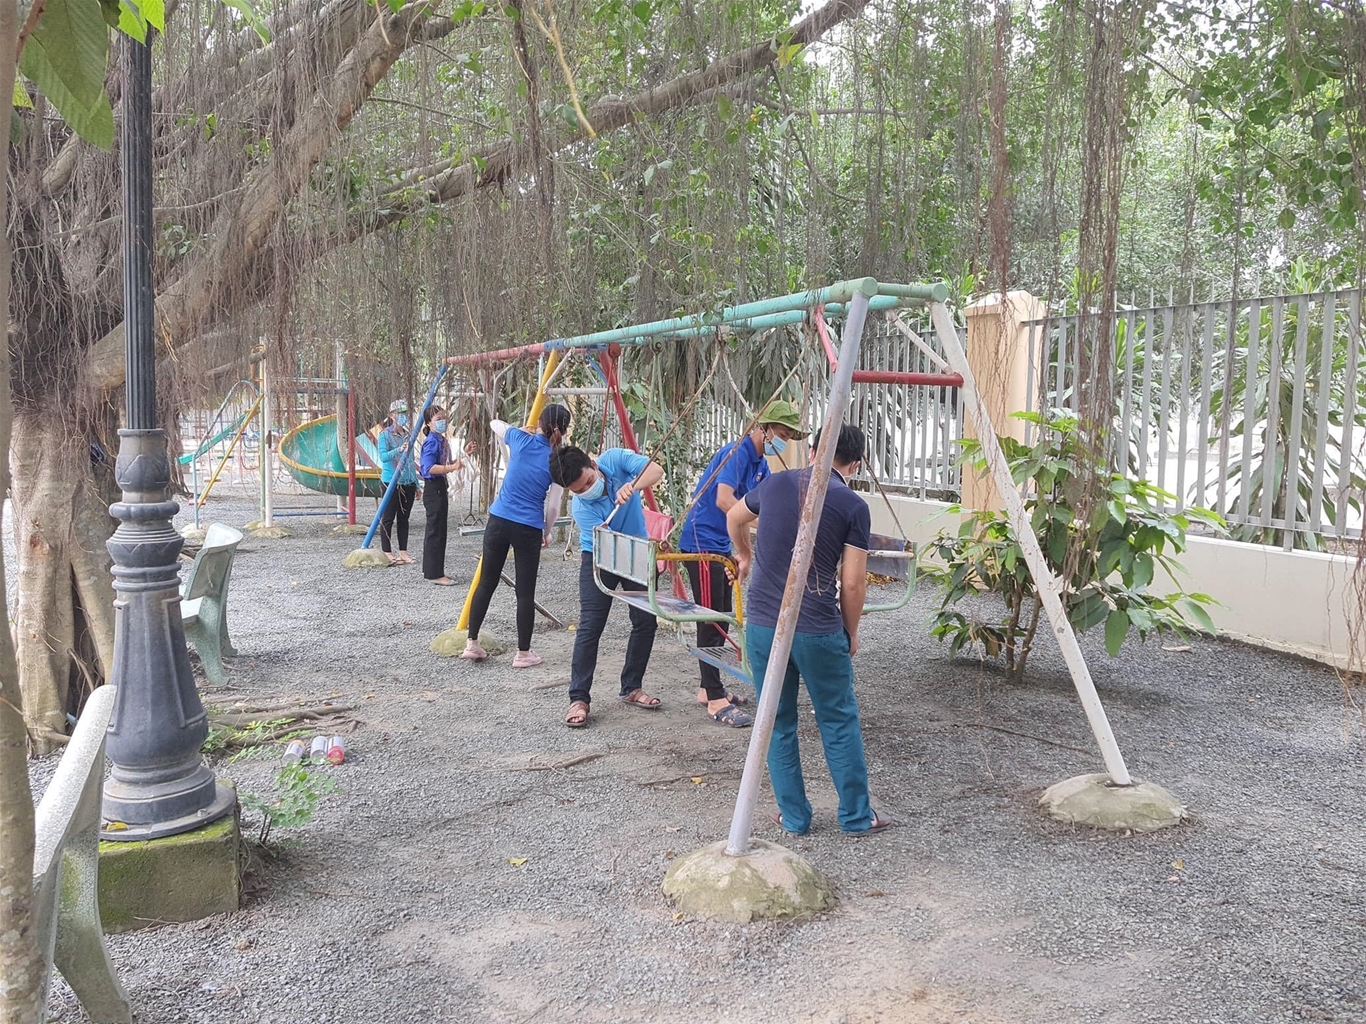 Sửa chữa khu vui chơi cho thiếu nhi tại xã Tân Mỹ, huyện Bắc Tân Uyên